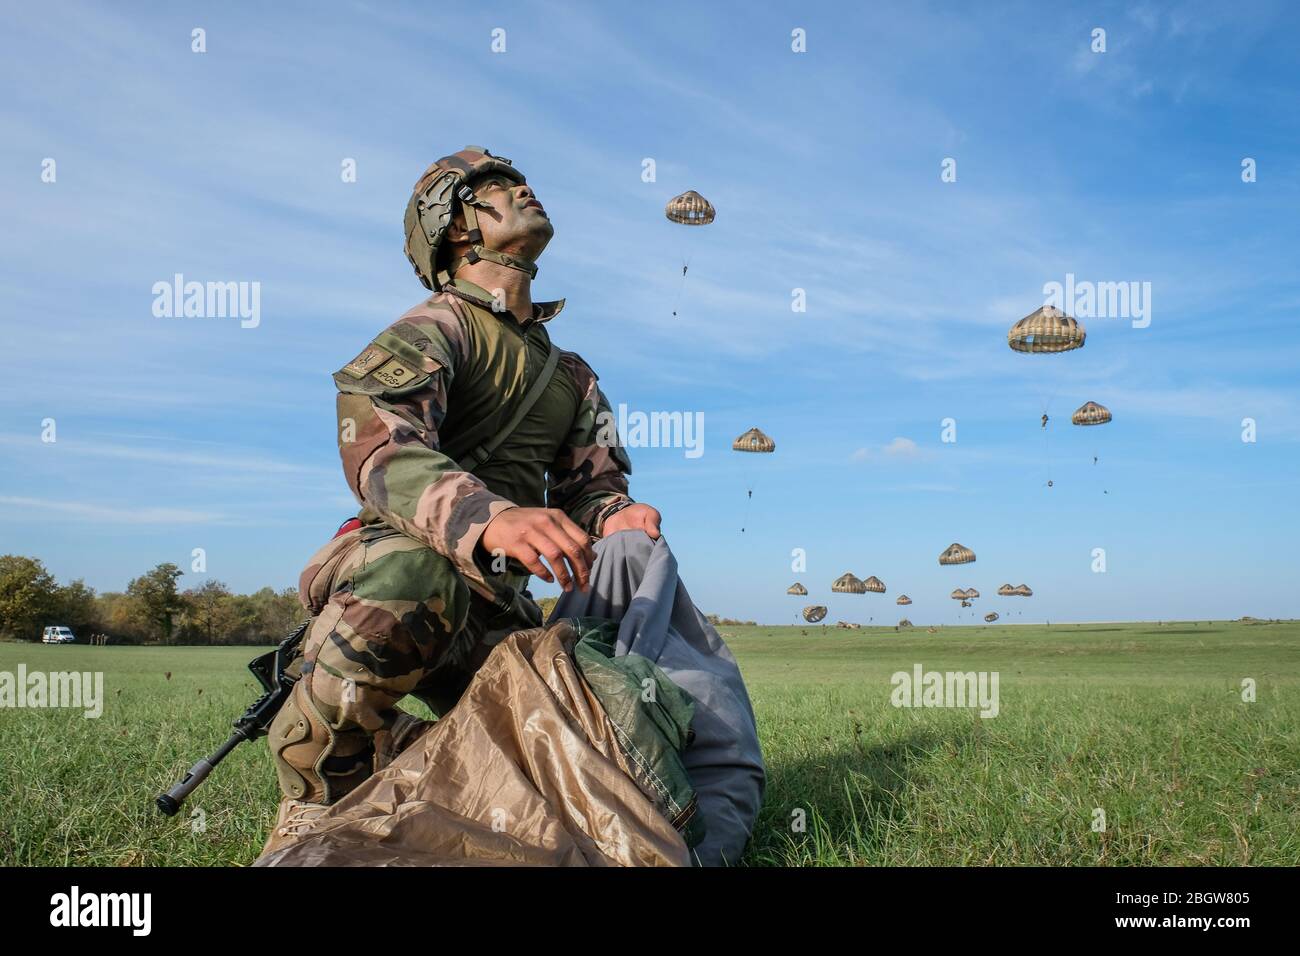 CAYLUS, FRANKREICH - NOVEMBER 14: Ein Soldat, der seinen Fallschirm nach seinem Sprung aus einem Flugzeug in Südfrankreich faltet, um den Falcon Amarante m zu trainieren Stockfoto